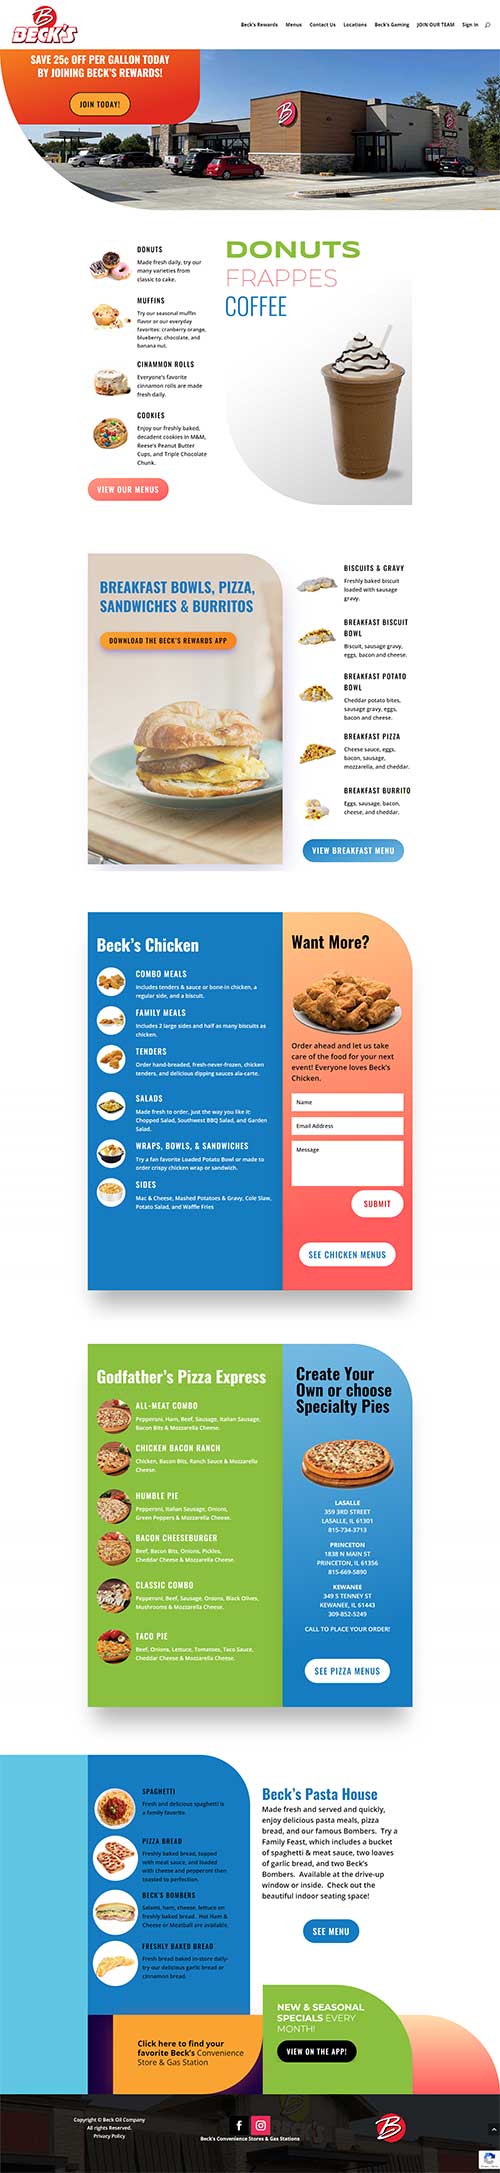 Website Redesign for Go to Becks!